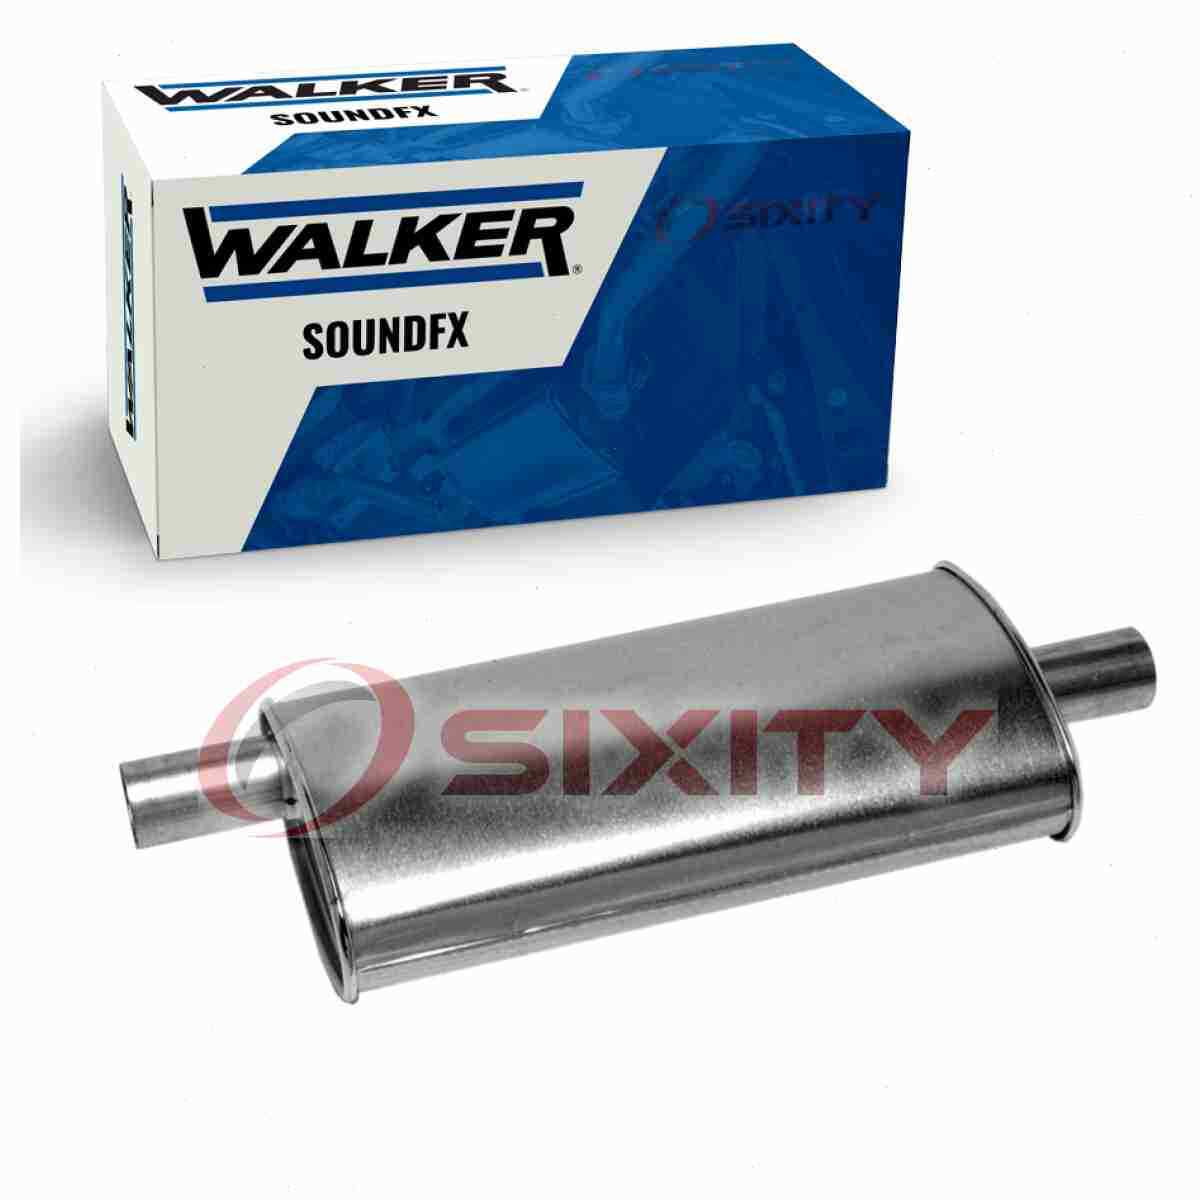 Walker SoundFX Exhaust Muffler for 1984-1987 BMW 325e 2.7L L6 Mufflers  eu